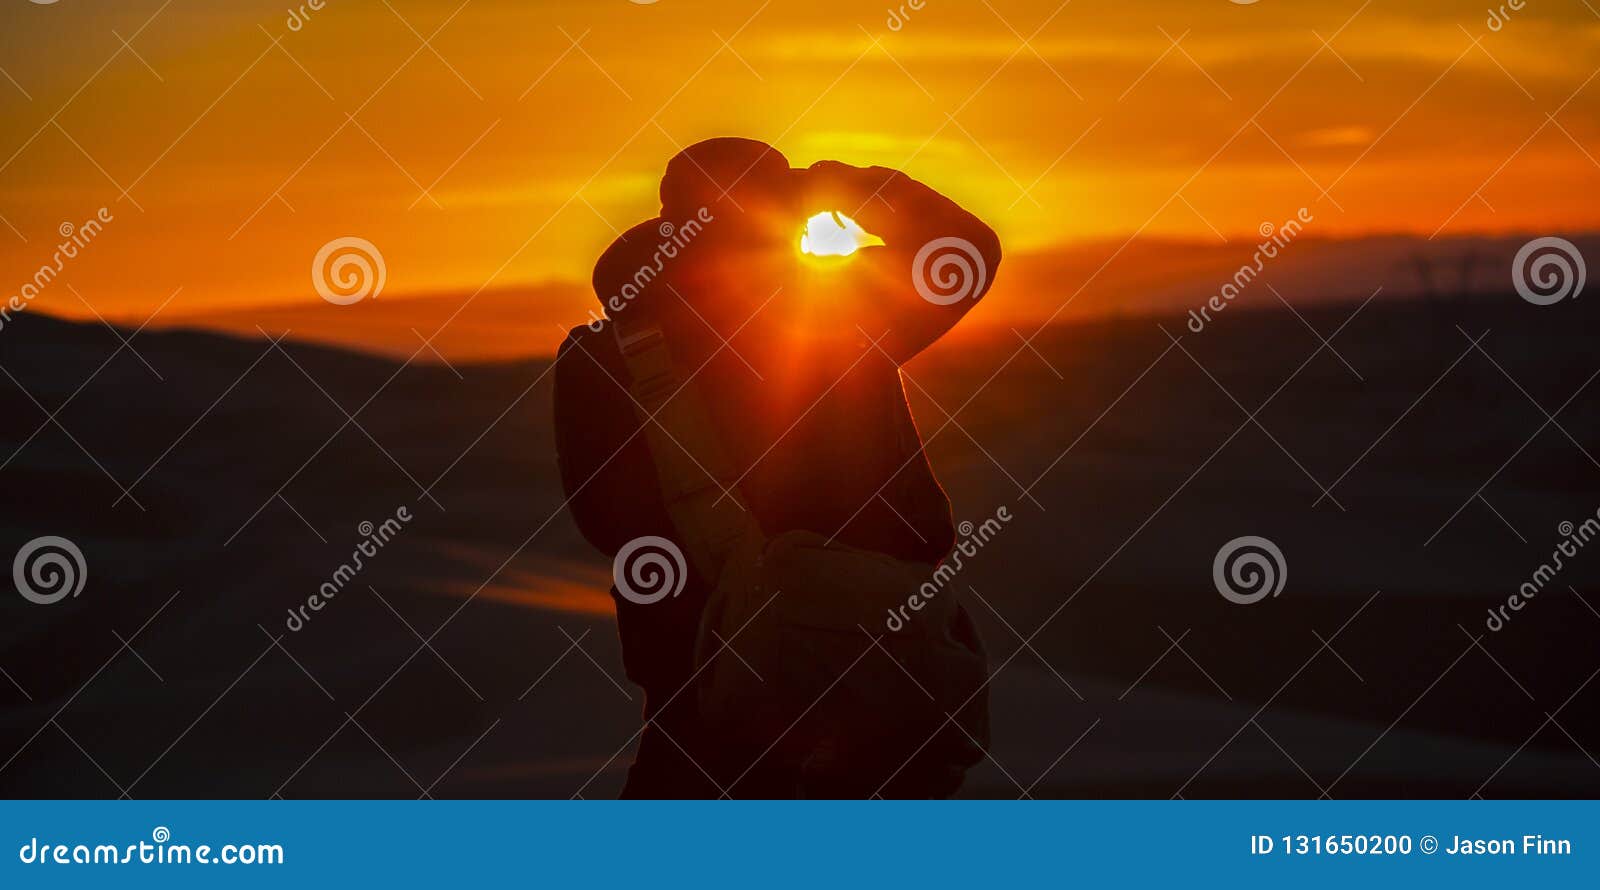 Uomo che prende un'immagine delle dune di sabbia e di tramonto Siluetta di un uomo con la macchina fotografica in California al tramonto L'uomo sta prendendo un'immagine delle dune di sabbia e la regolazione del sole nell'orizzonte dorato